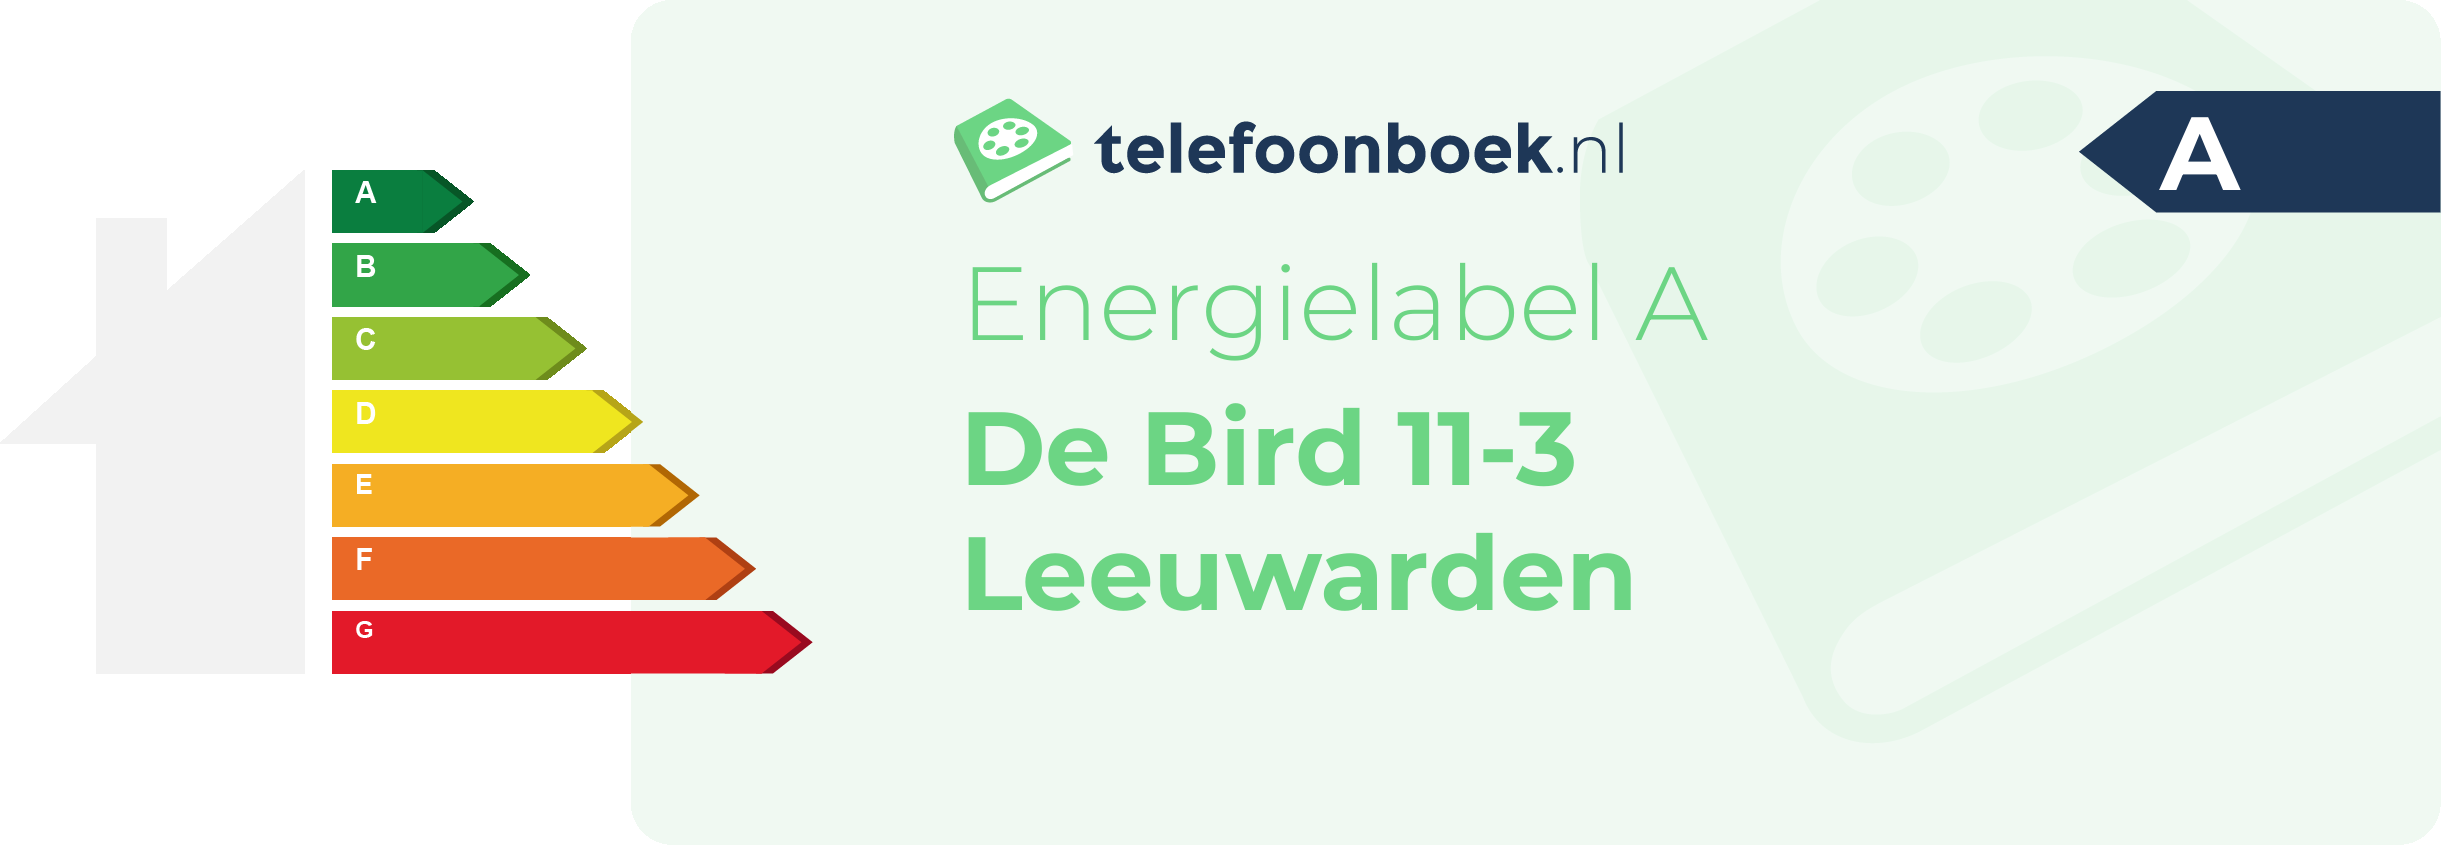 Energielabel De Bird 11-3 Leeuwarden